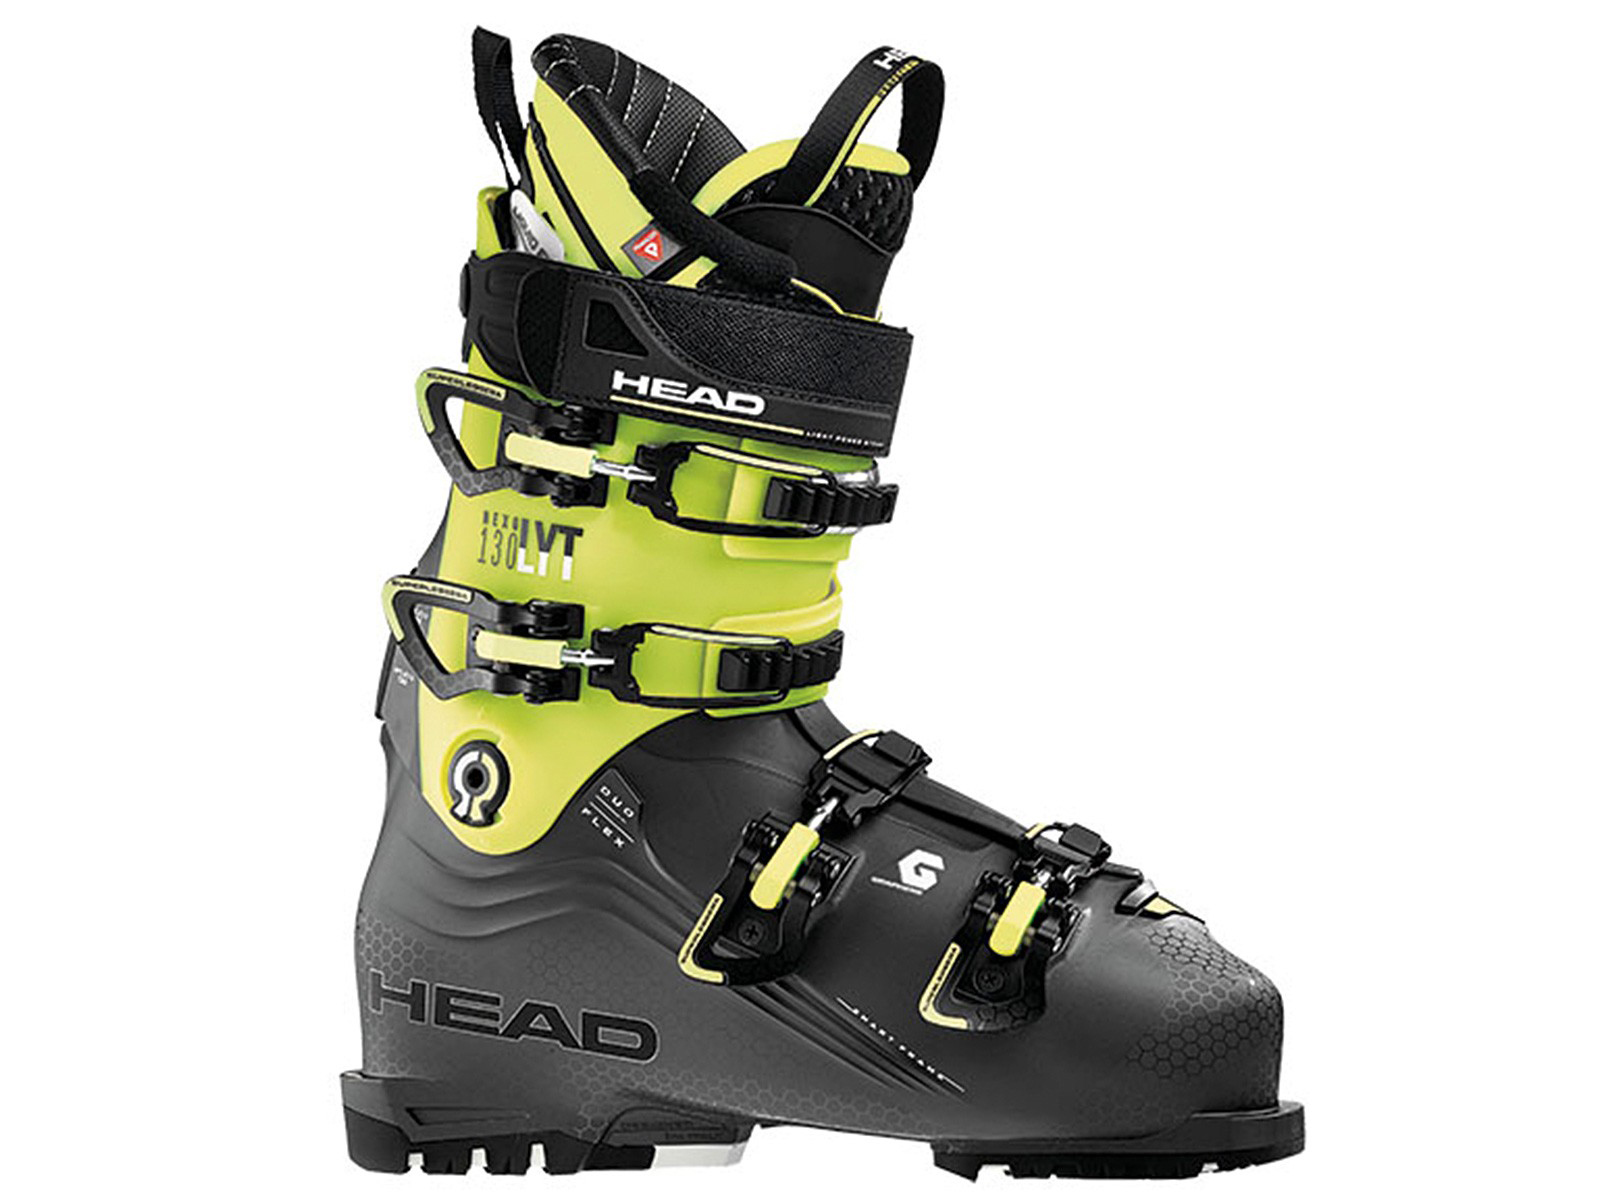 Head Nexo LYT 120 Men's Ski Boots NEW 2020 